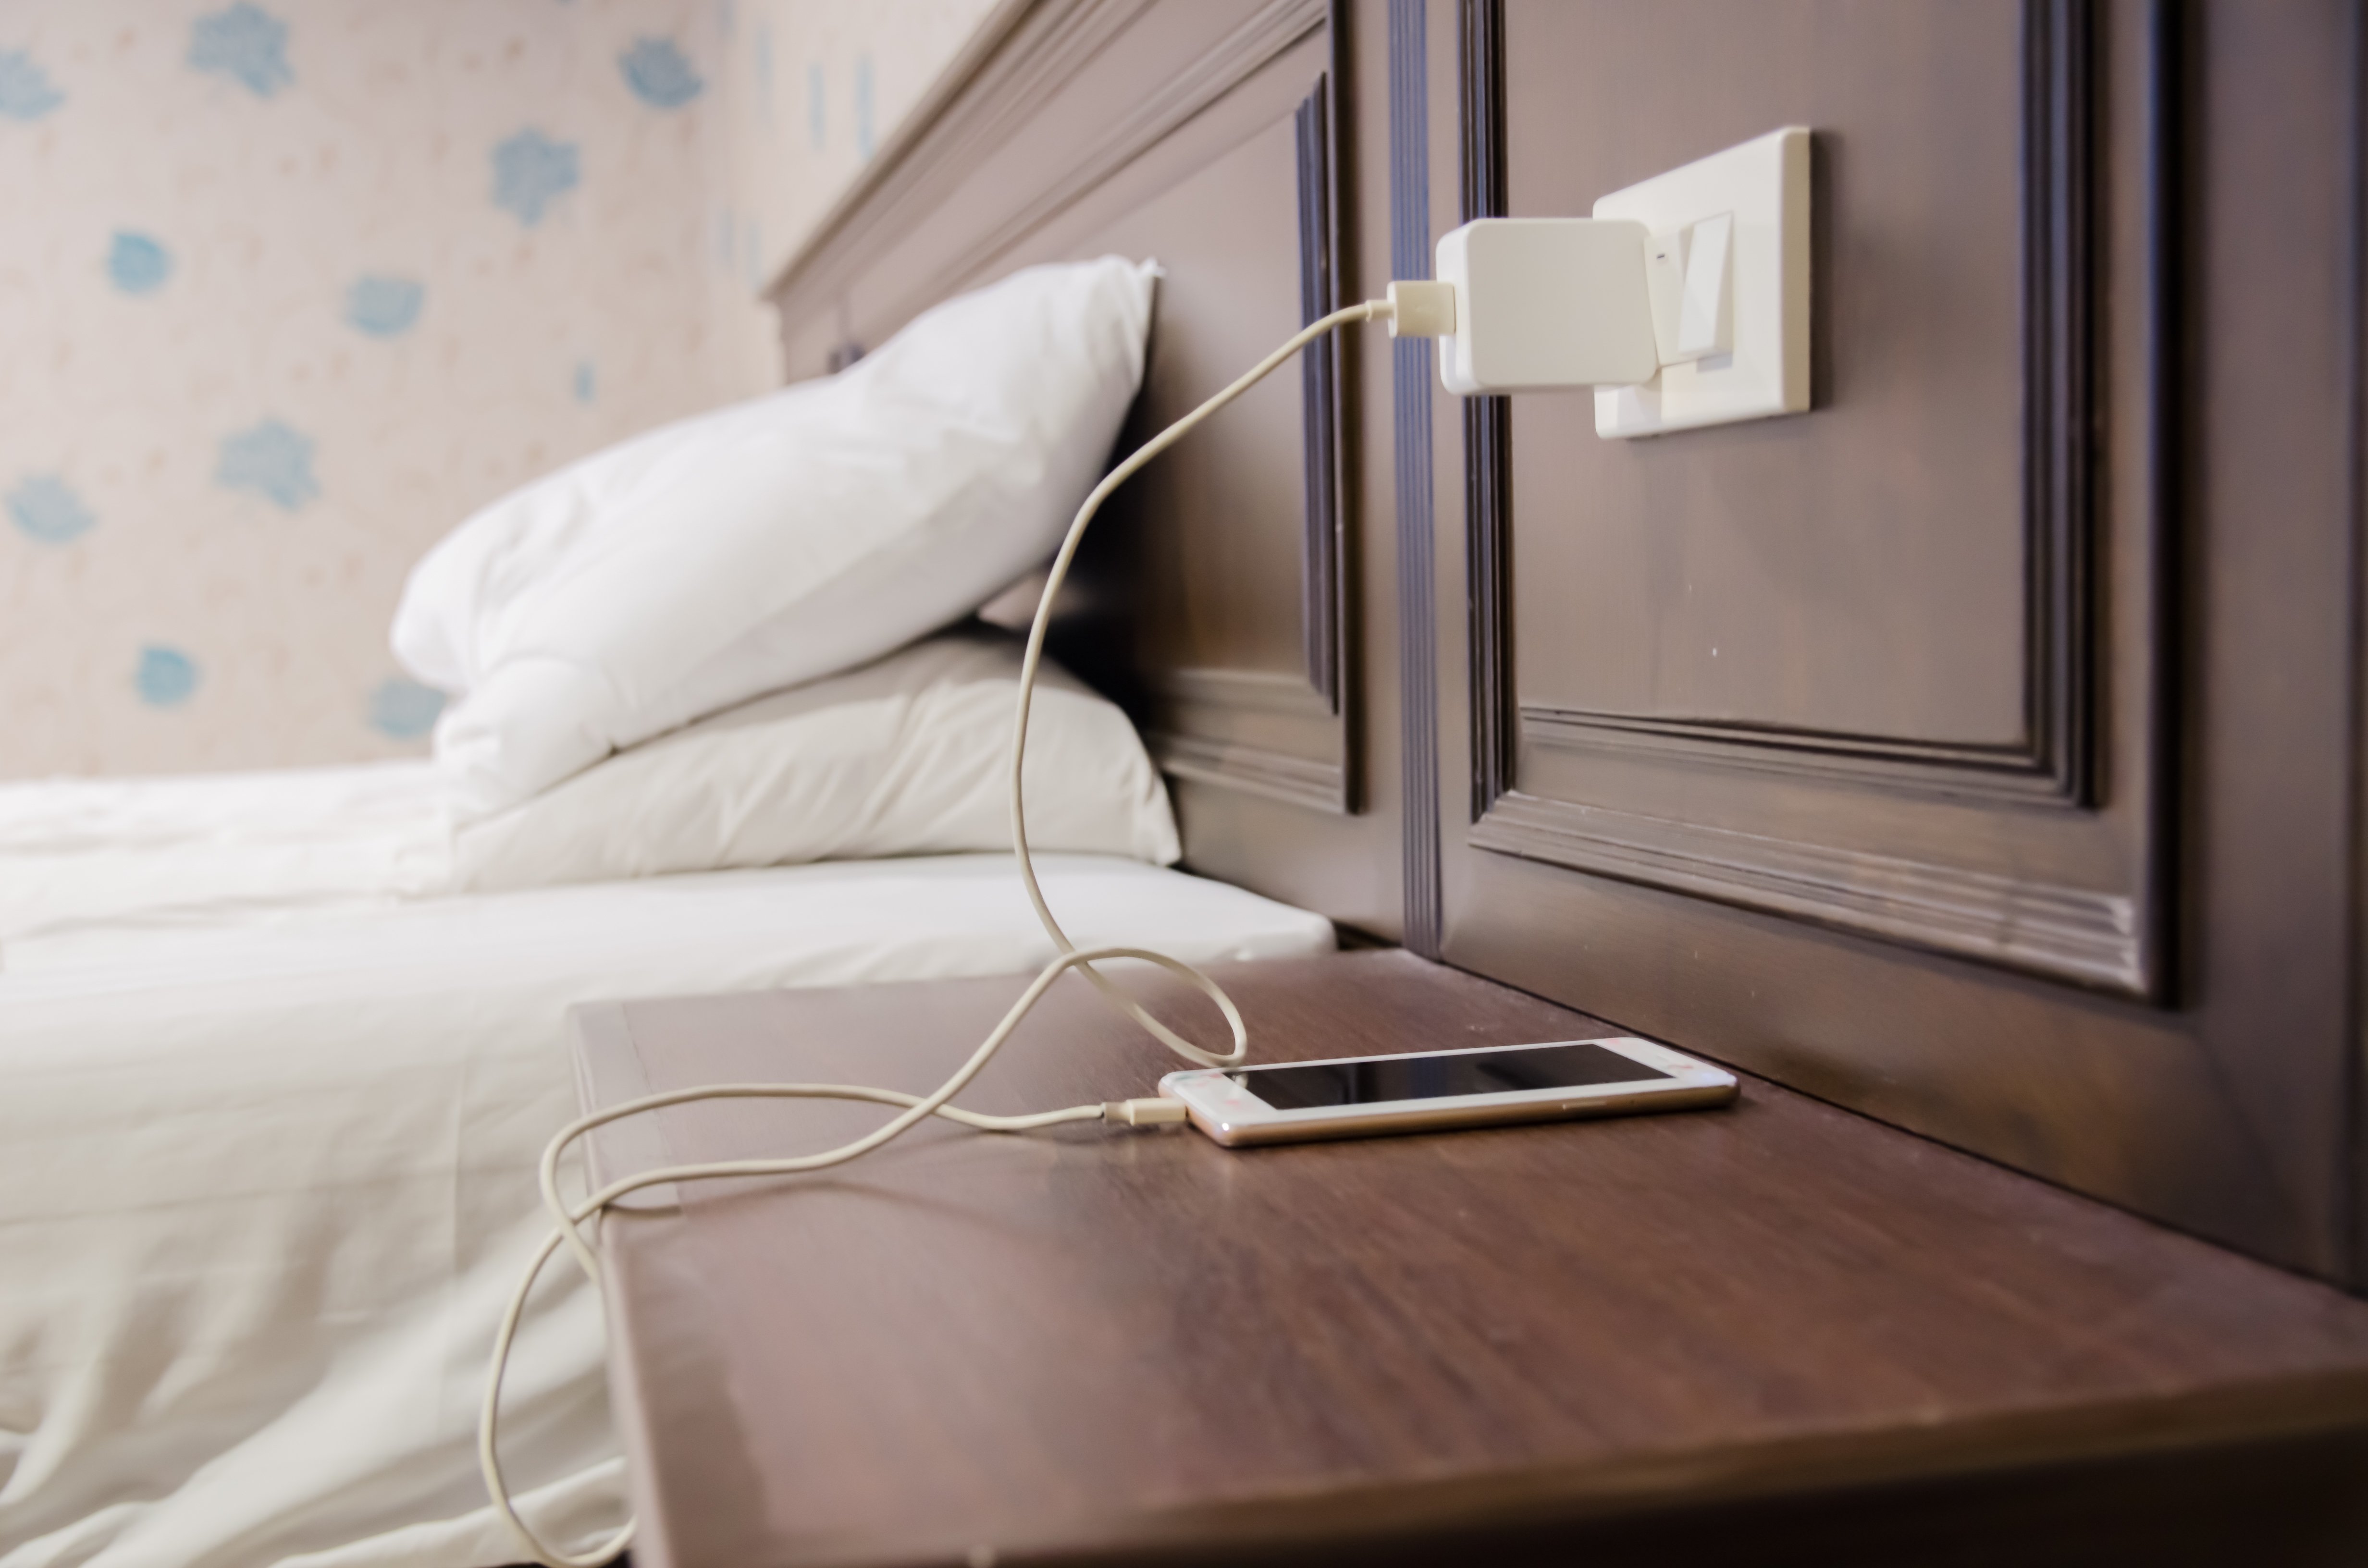 Adapter zum Aufladen von Smartphones auf dem Tisch neben dem Bett im Hotel | Quelle: Shutterstock